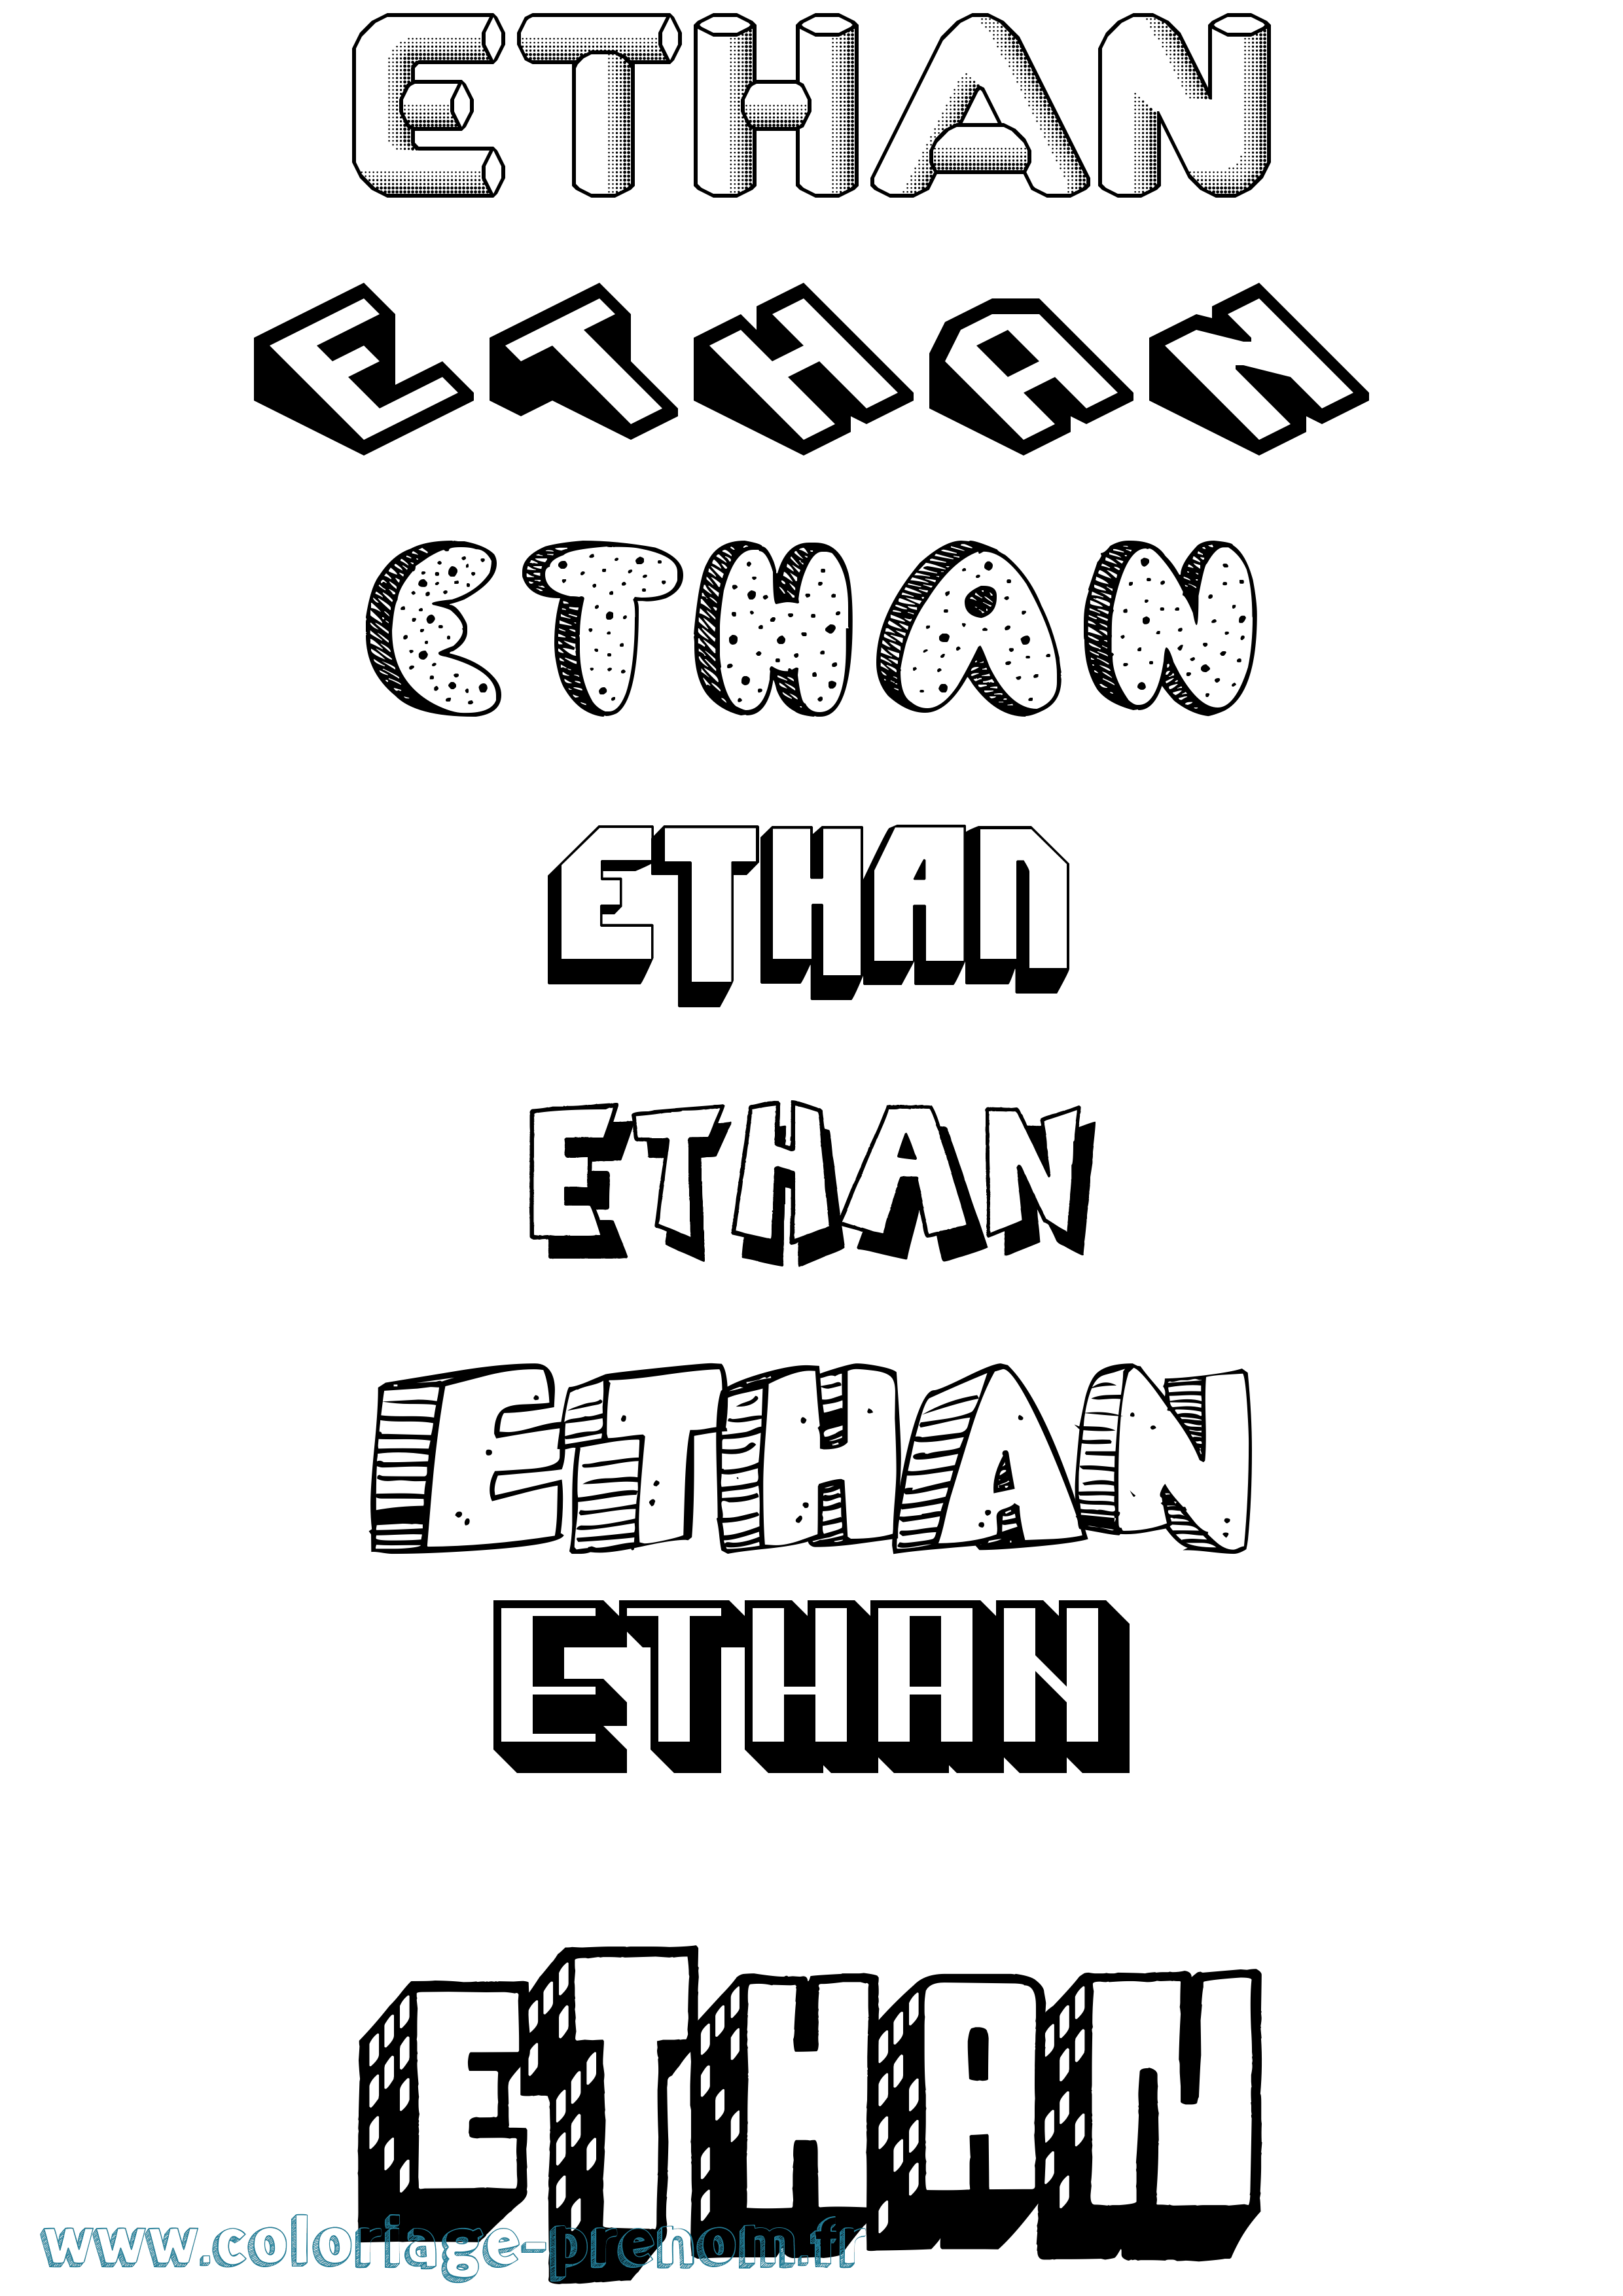 Coloriage prénom Ethan